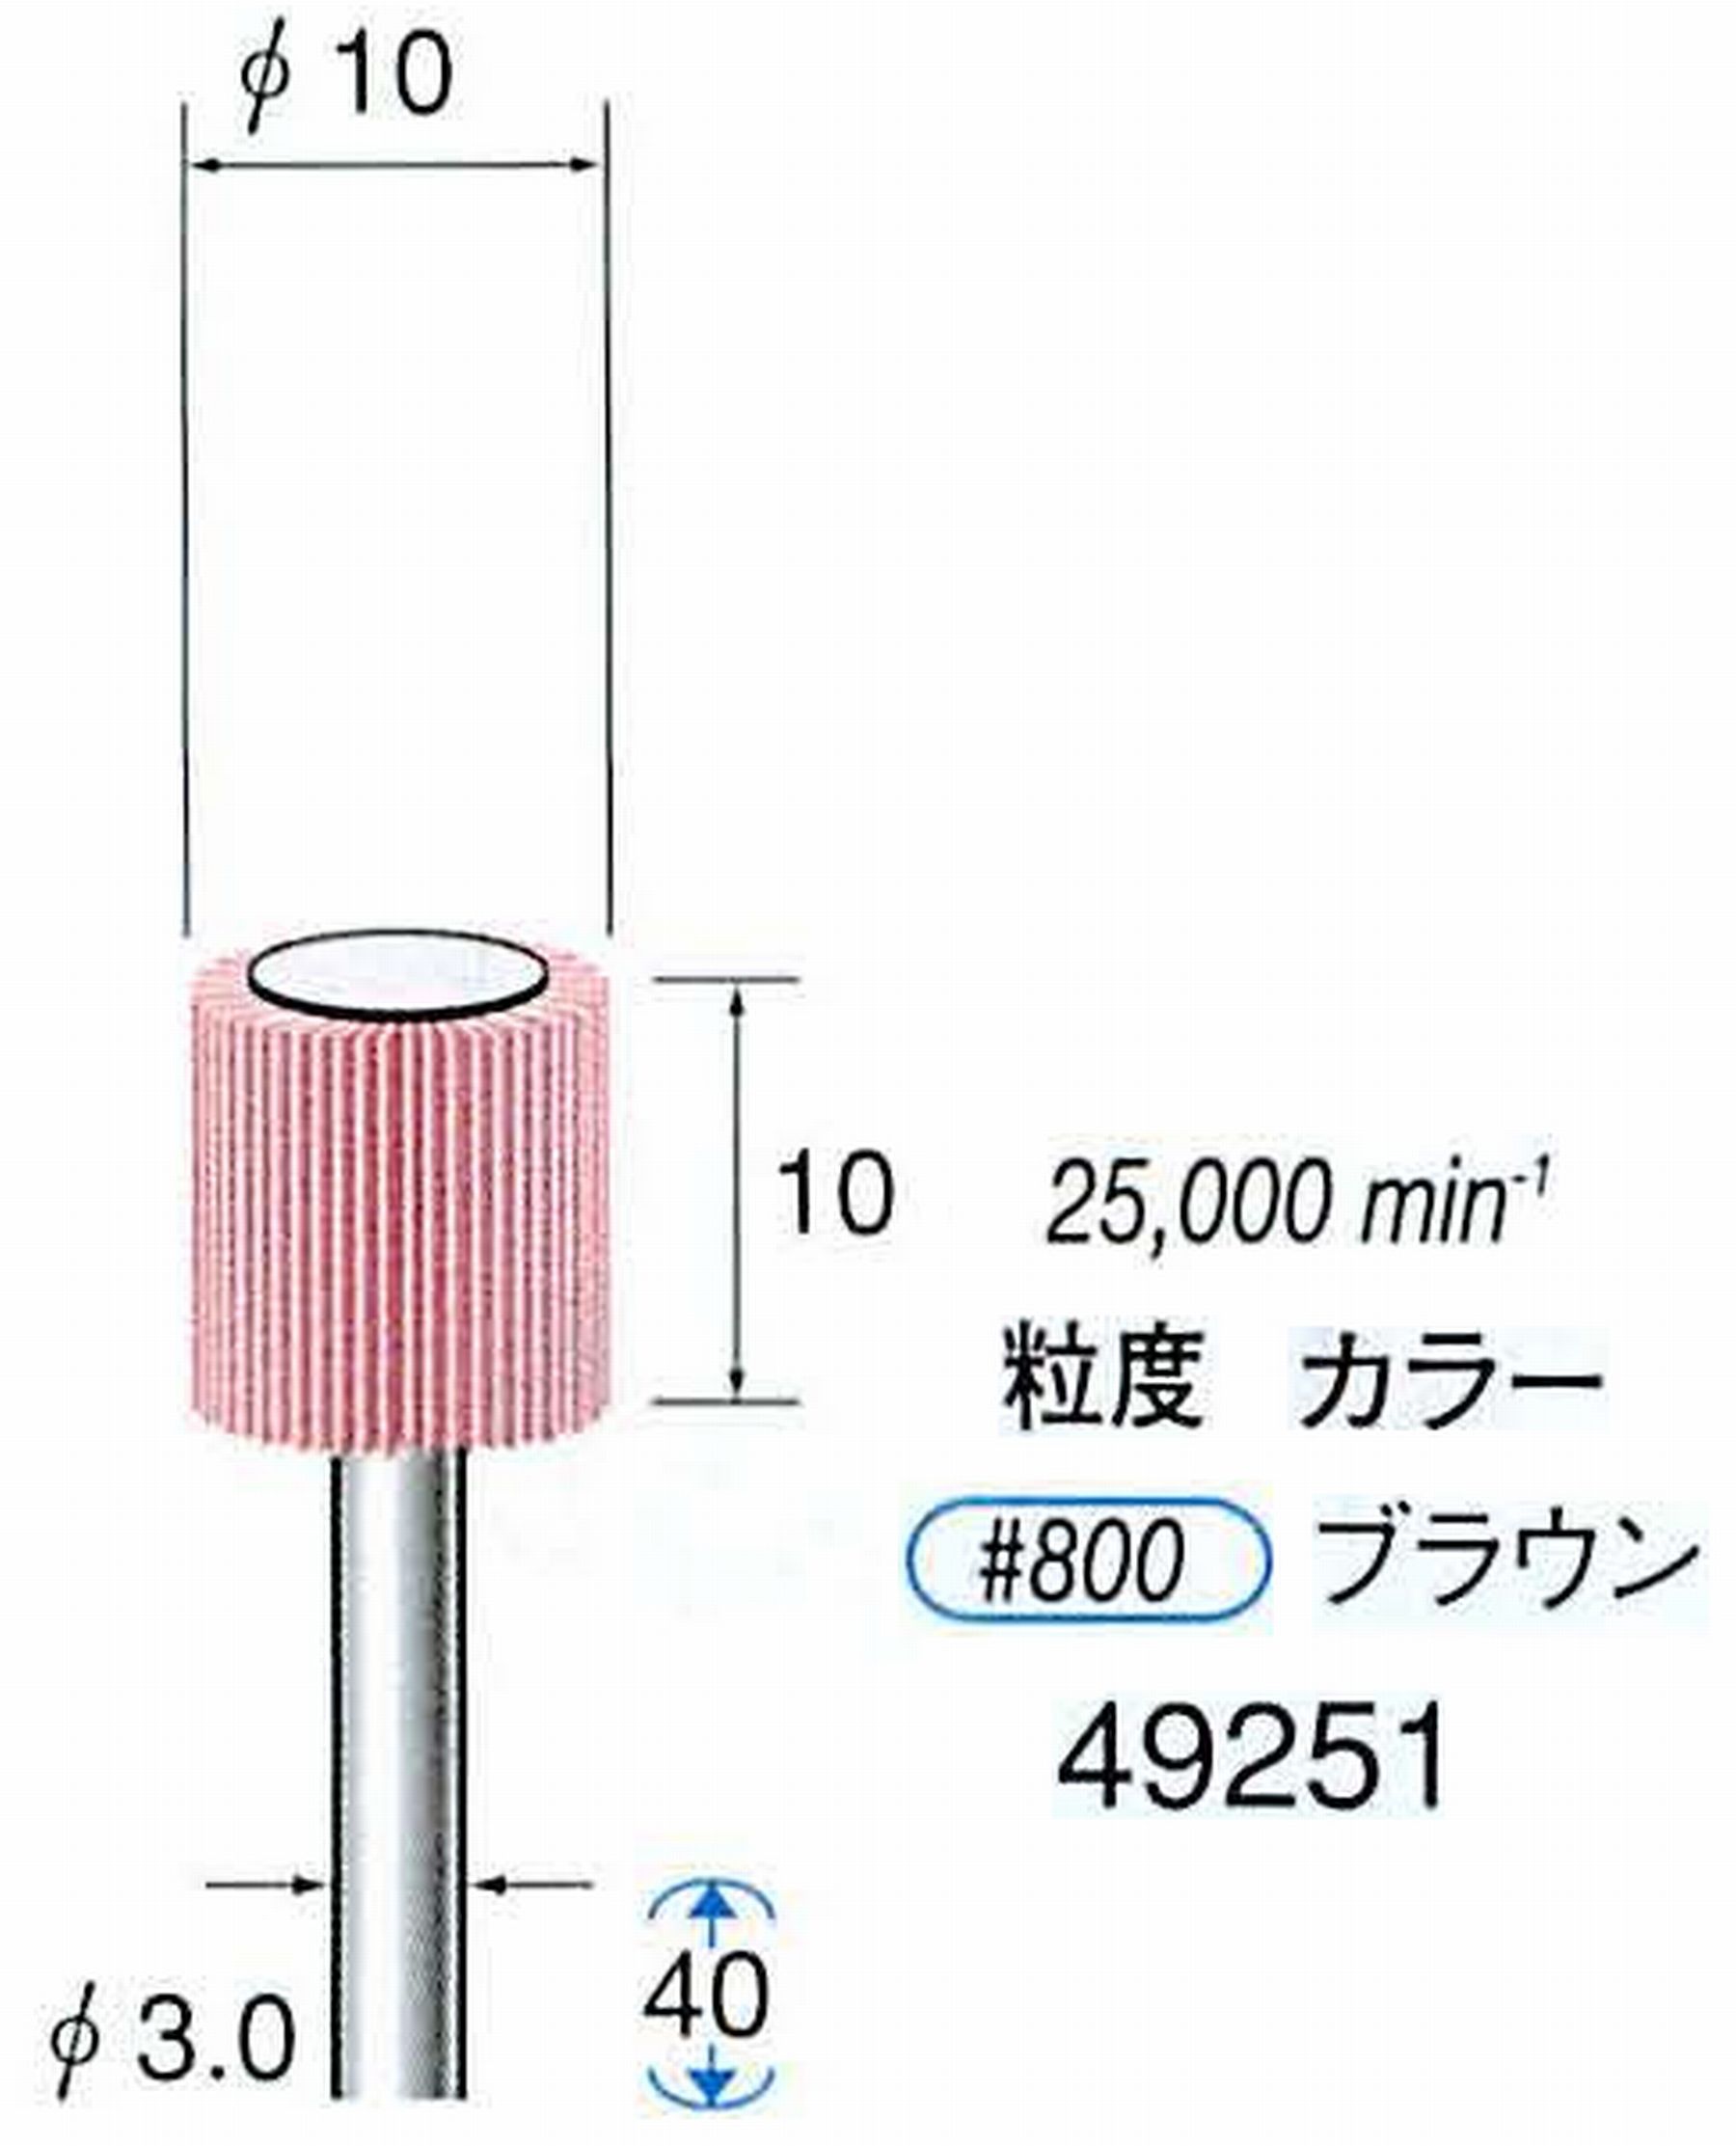 ナカニシ/NAKANISHI ファイン フラップサンダー 軸径(シャンク)φ3.0mm 49251